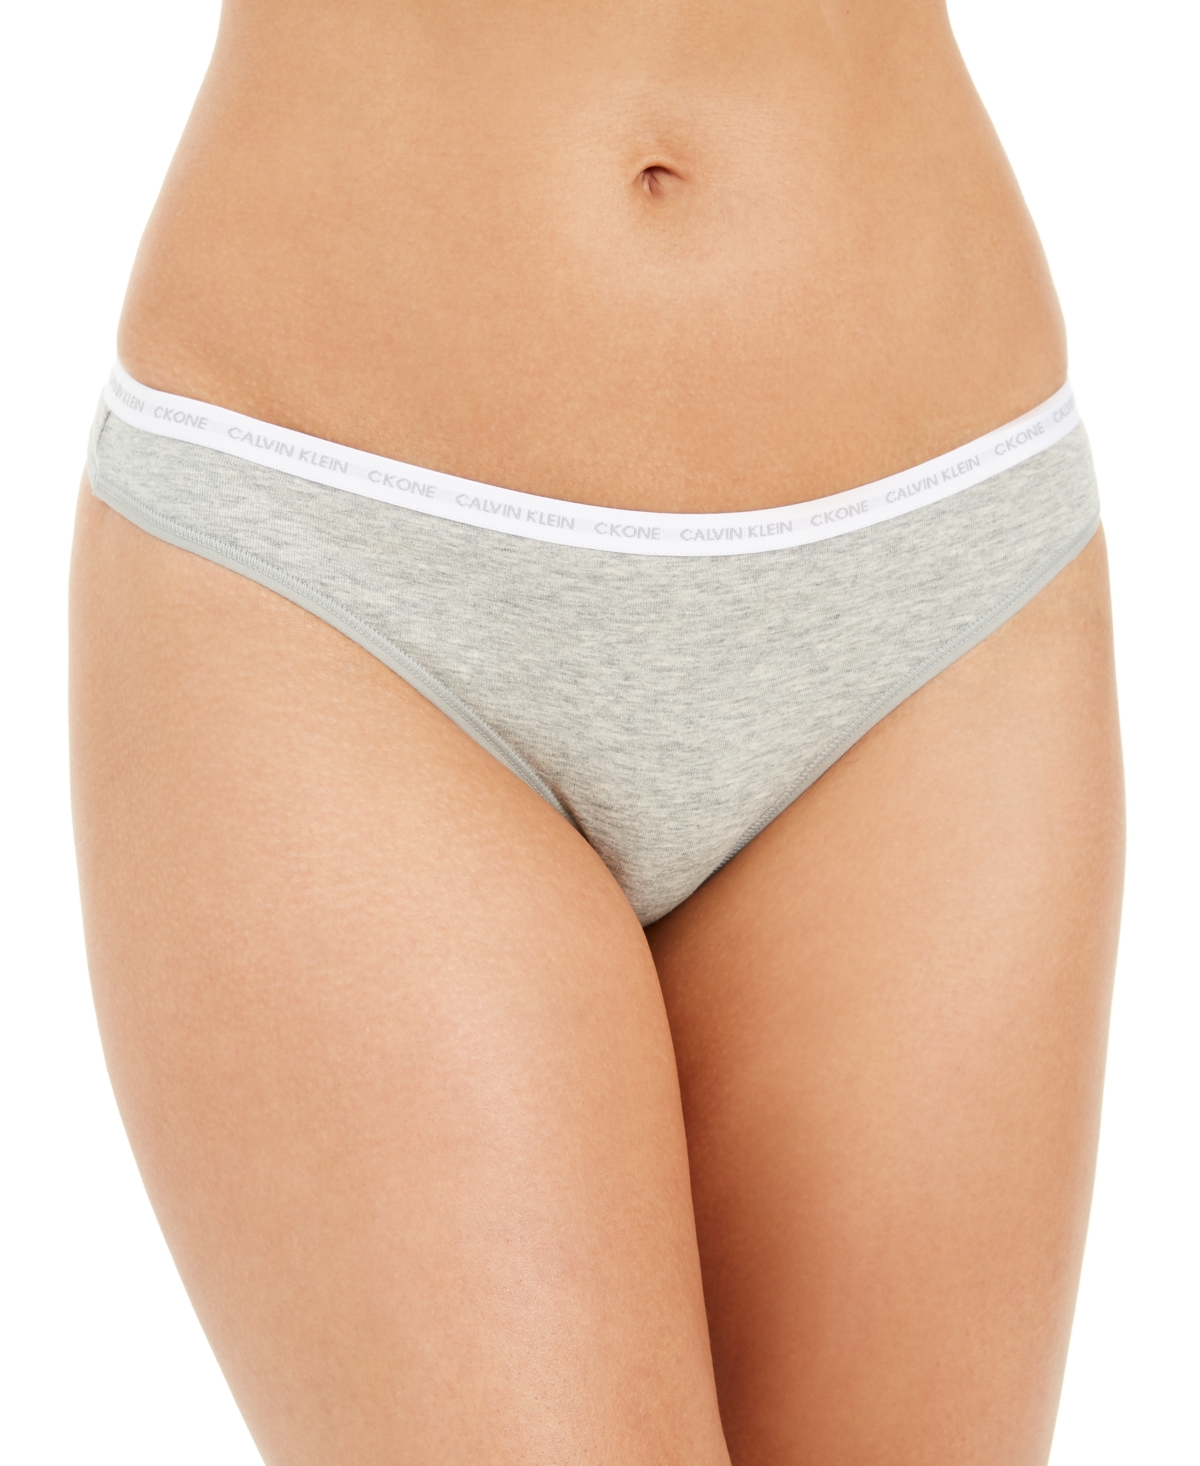 Ck One Cotton Singles Thong Underwear QD3783 - White